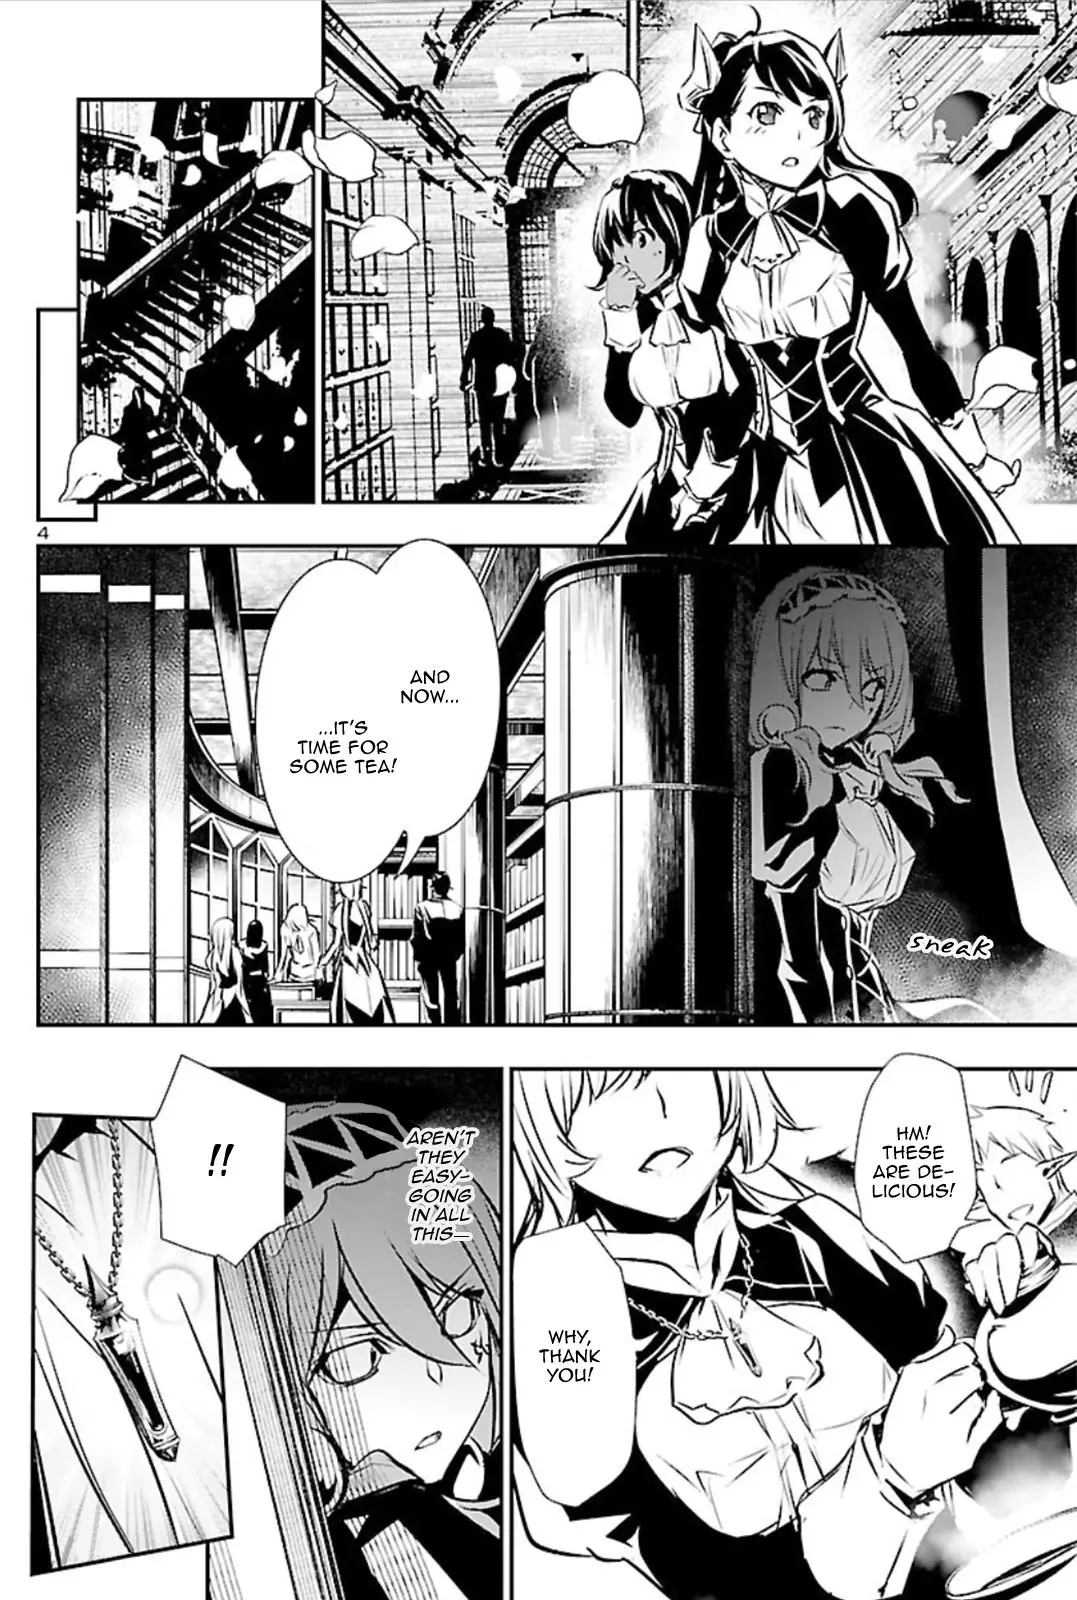 Shinju no Nectar - 41 page 3